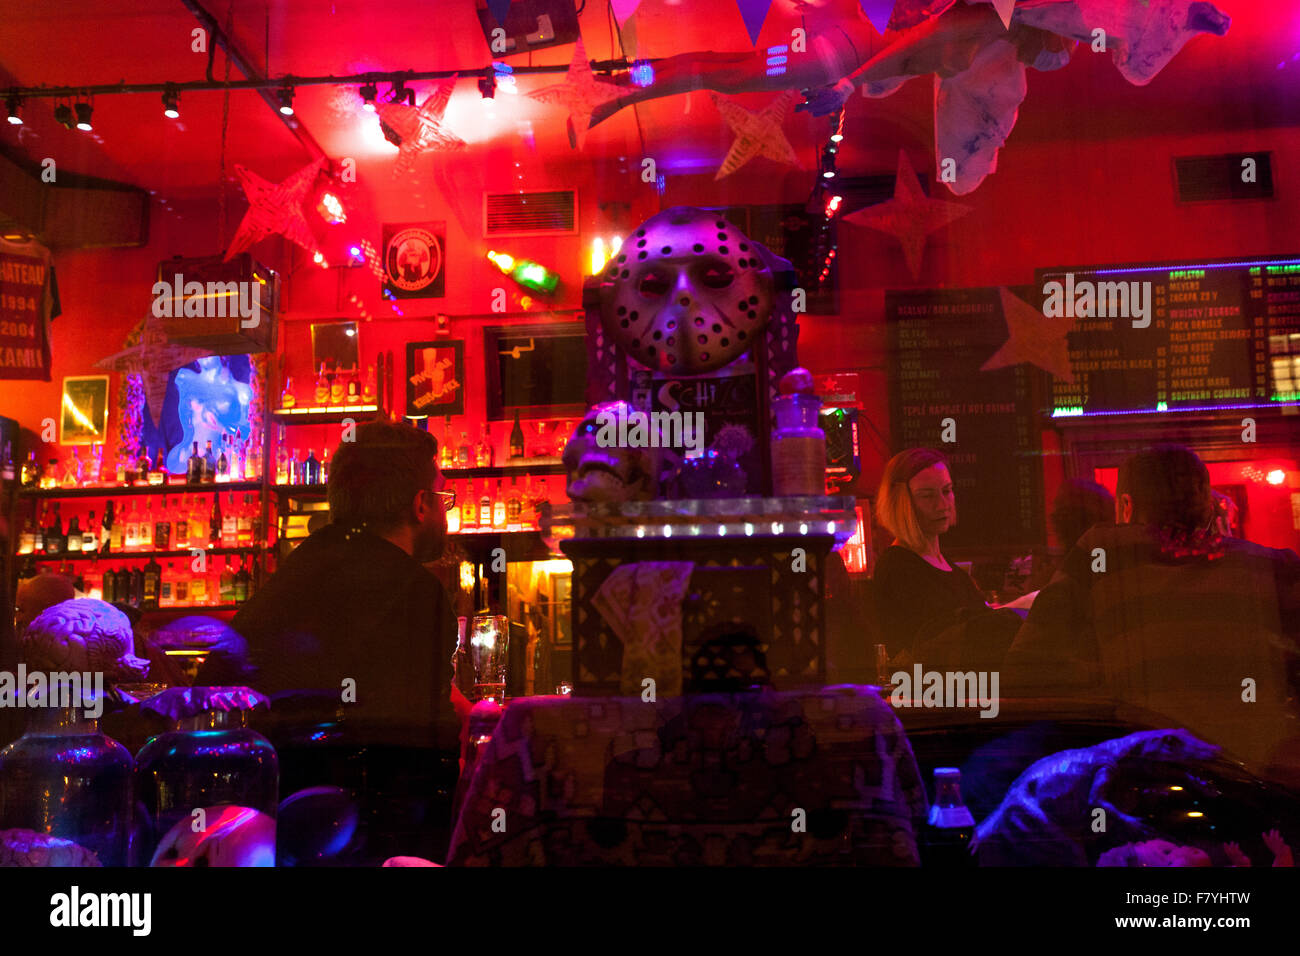 Berühmte Prager Kneipe in der Nähe des Altstädter Ring Prag Chapeau Rouge Mit einzigartiger Atmosphäre Prag Bars Tschechische Republik Pubs Stockfoto